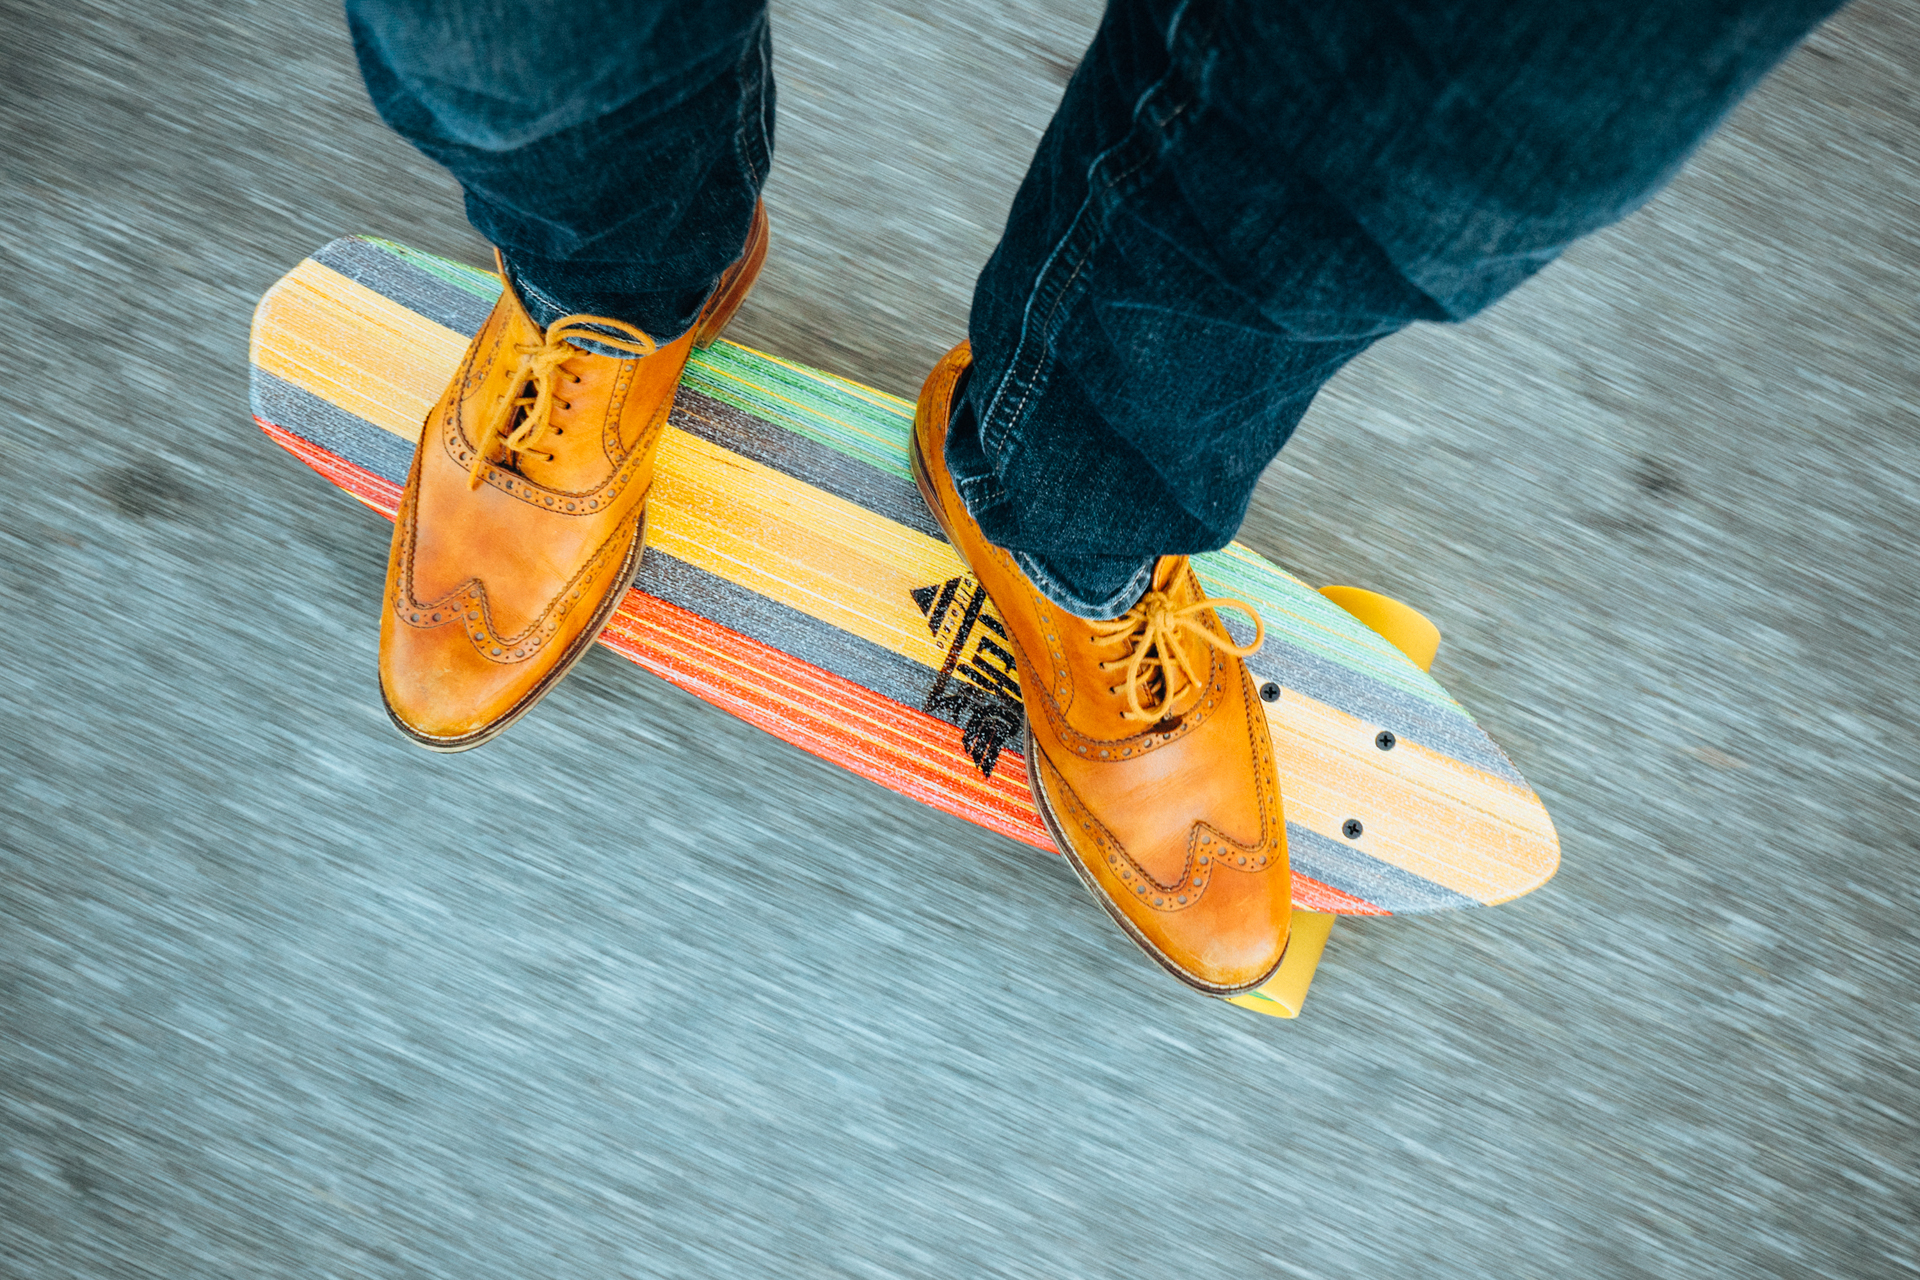 feet-hipster-longboard-skateboard